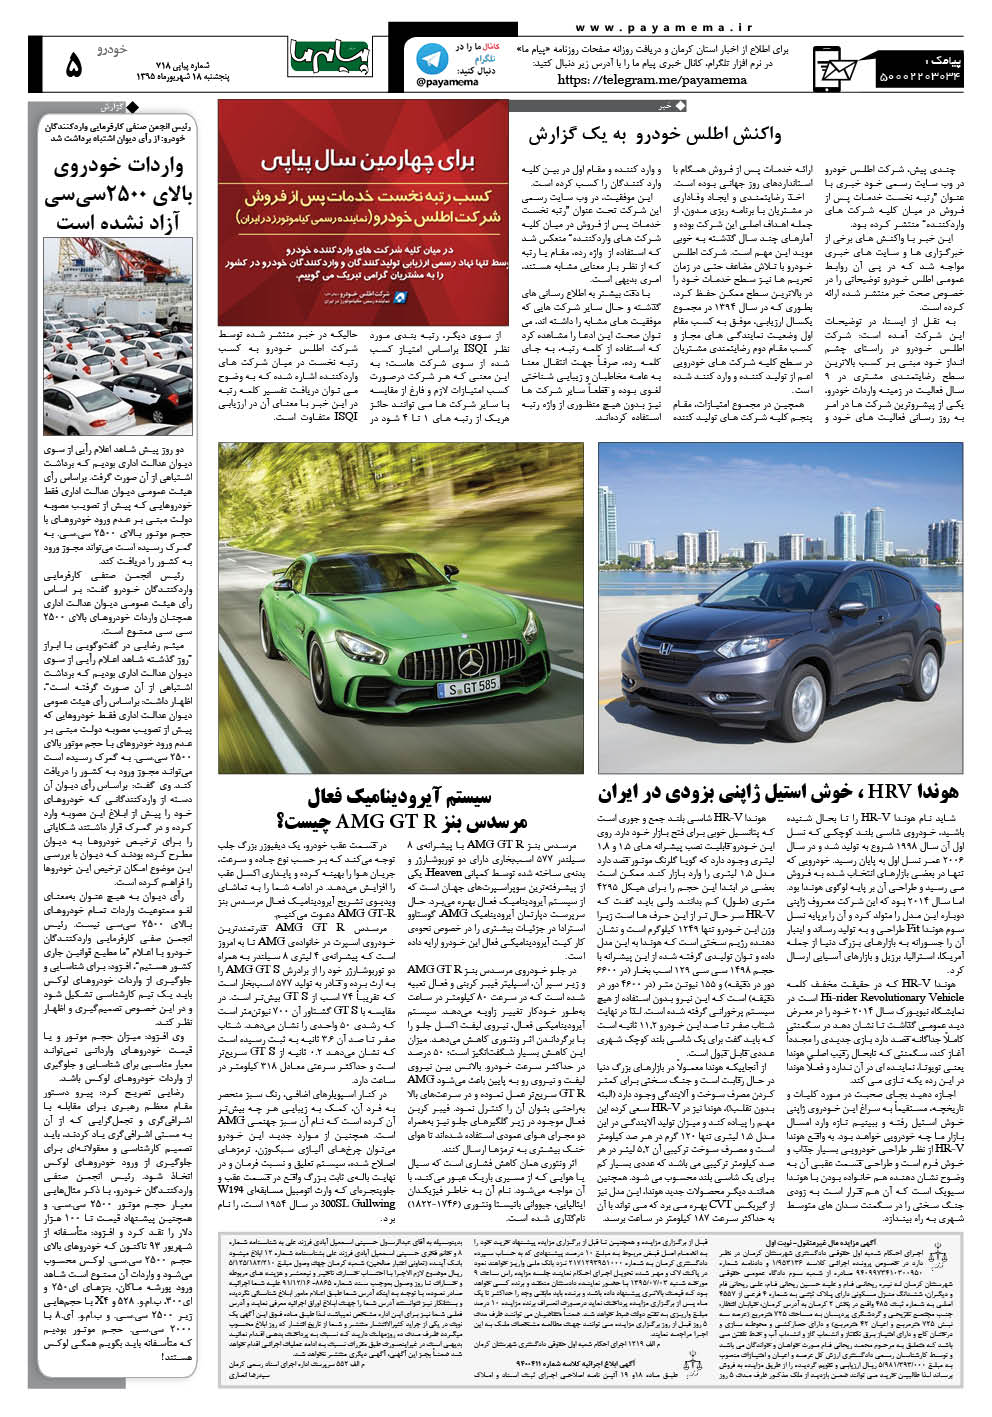 صفحه خودرو شماره 718 روزنامه پیام ما